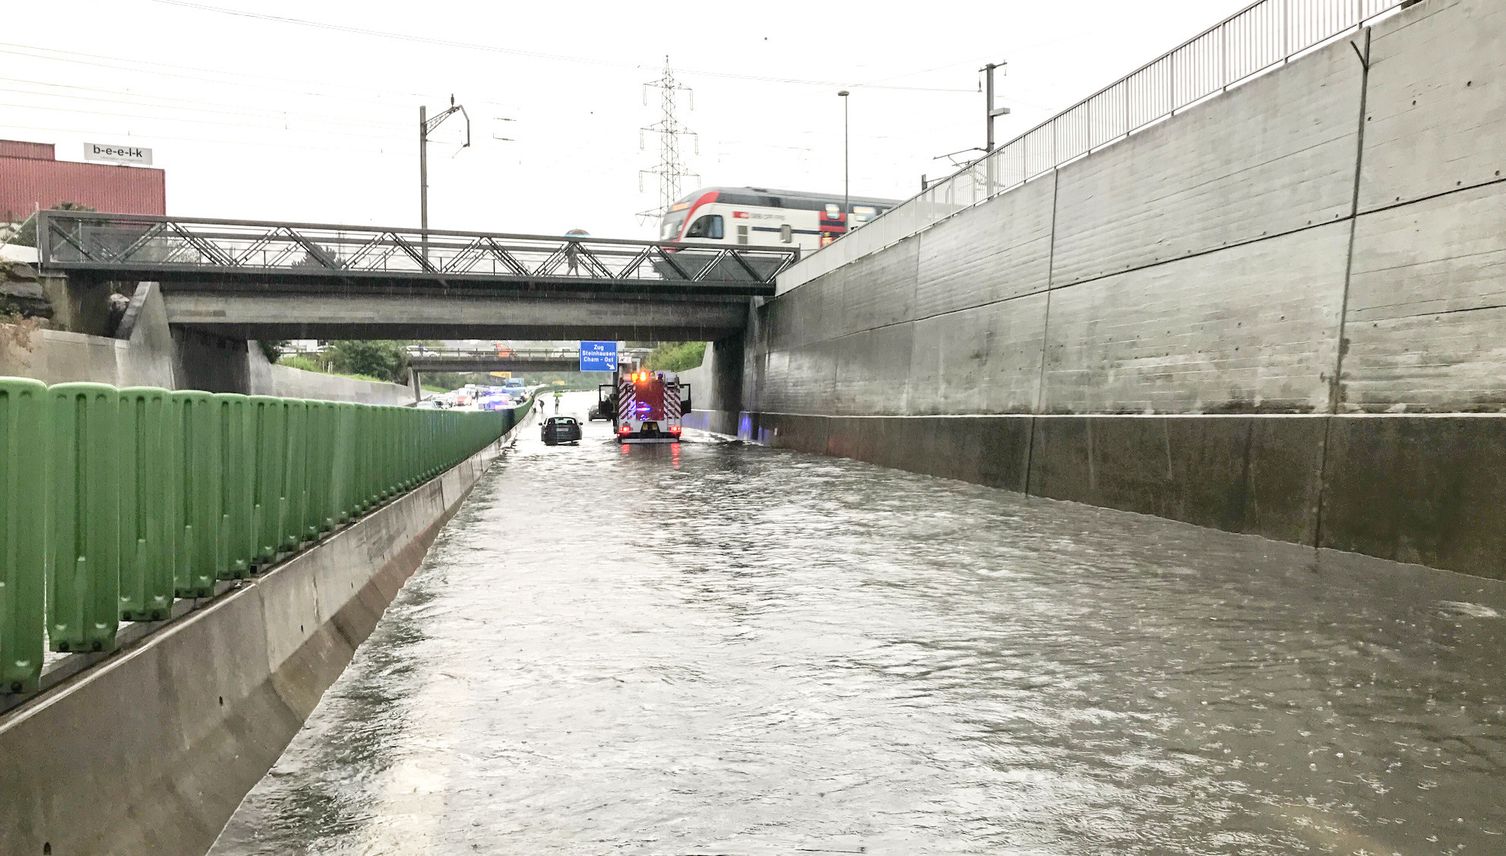 Hochwasser auf der Autobahn? Für Behörden offenbar kein Problem